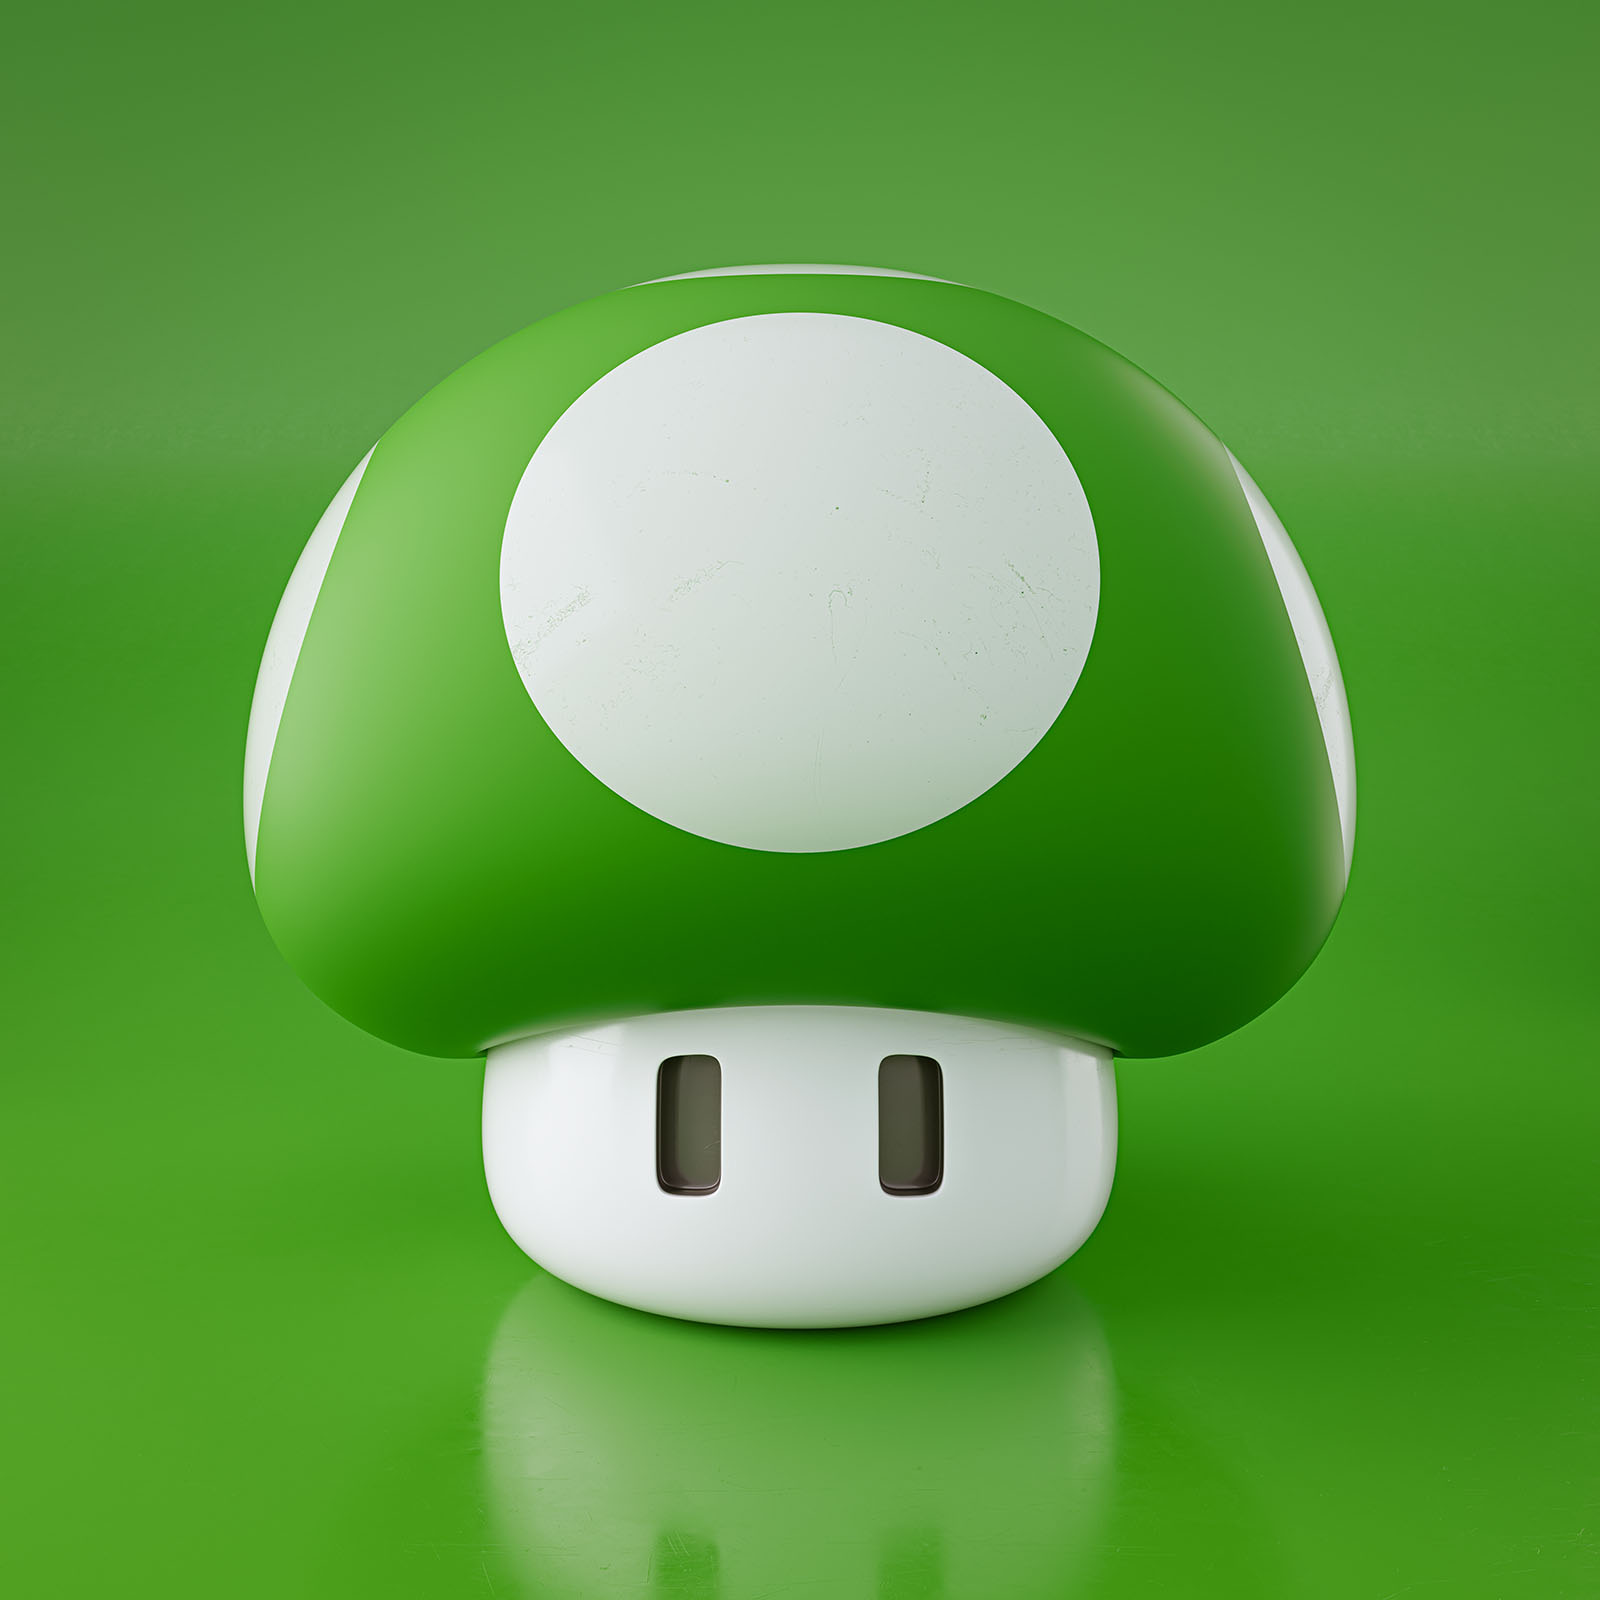 Super Mushroom - Green on Green Edition